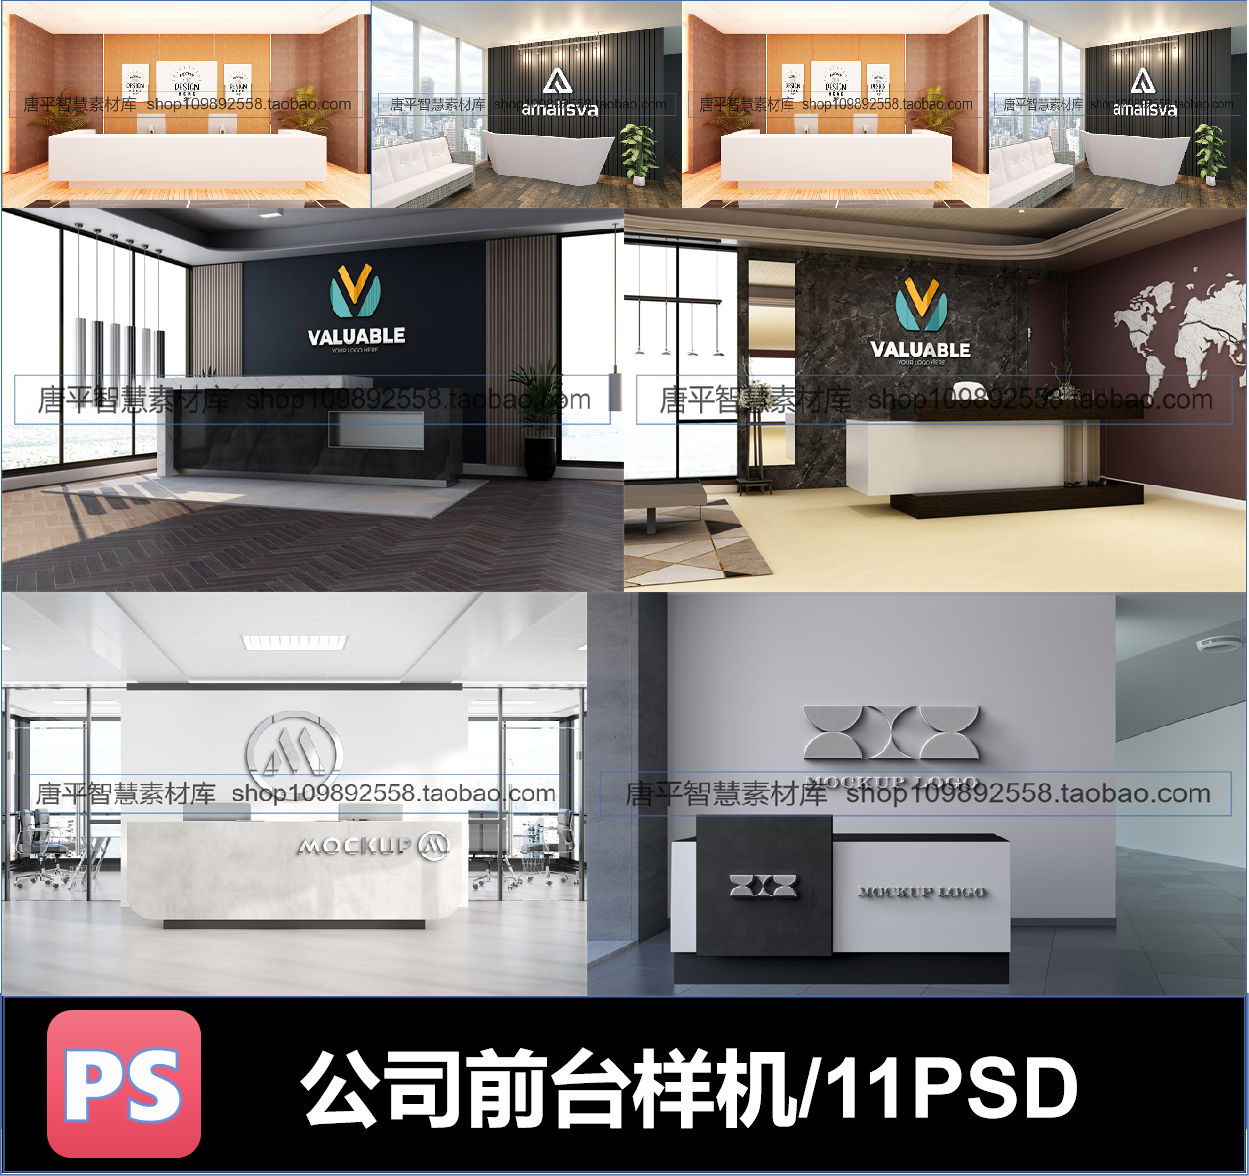 企业公司前台接待台形象墙LOGO效果图展示PSD贴图样机设计素材PS